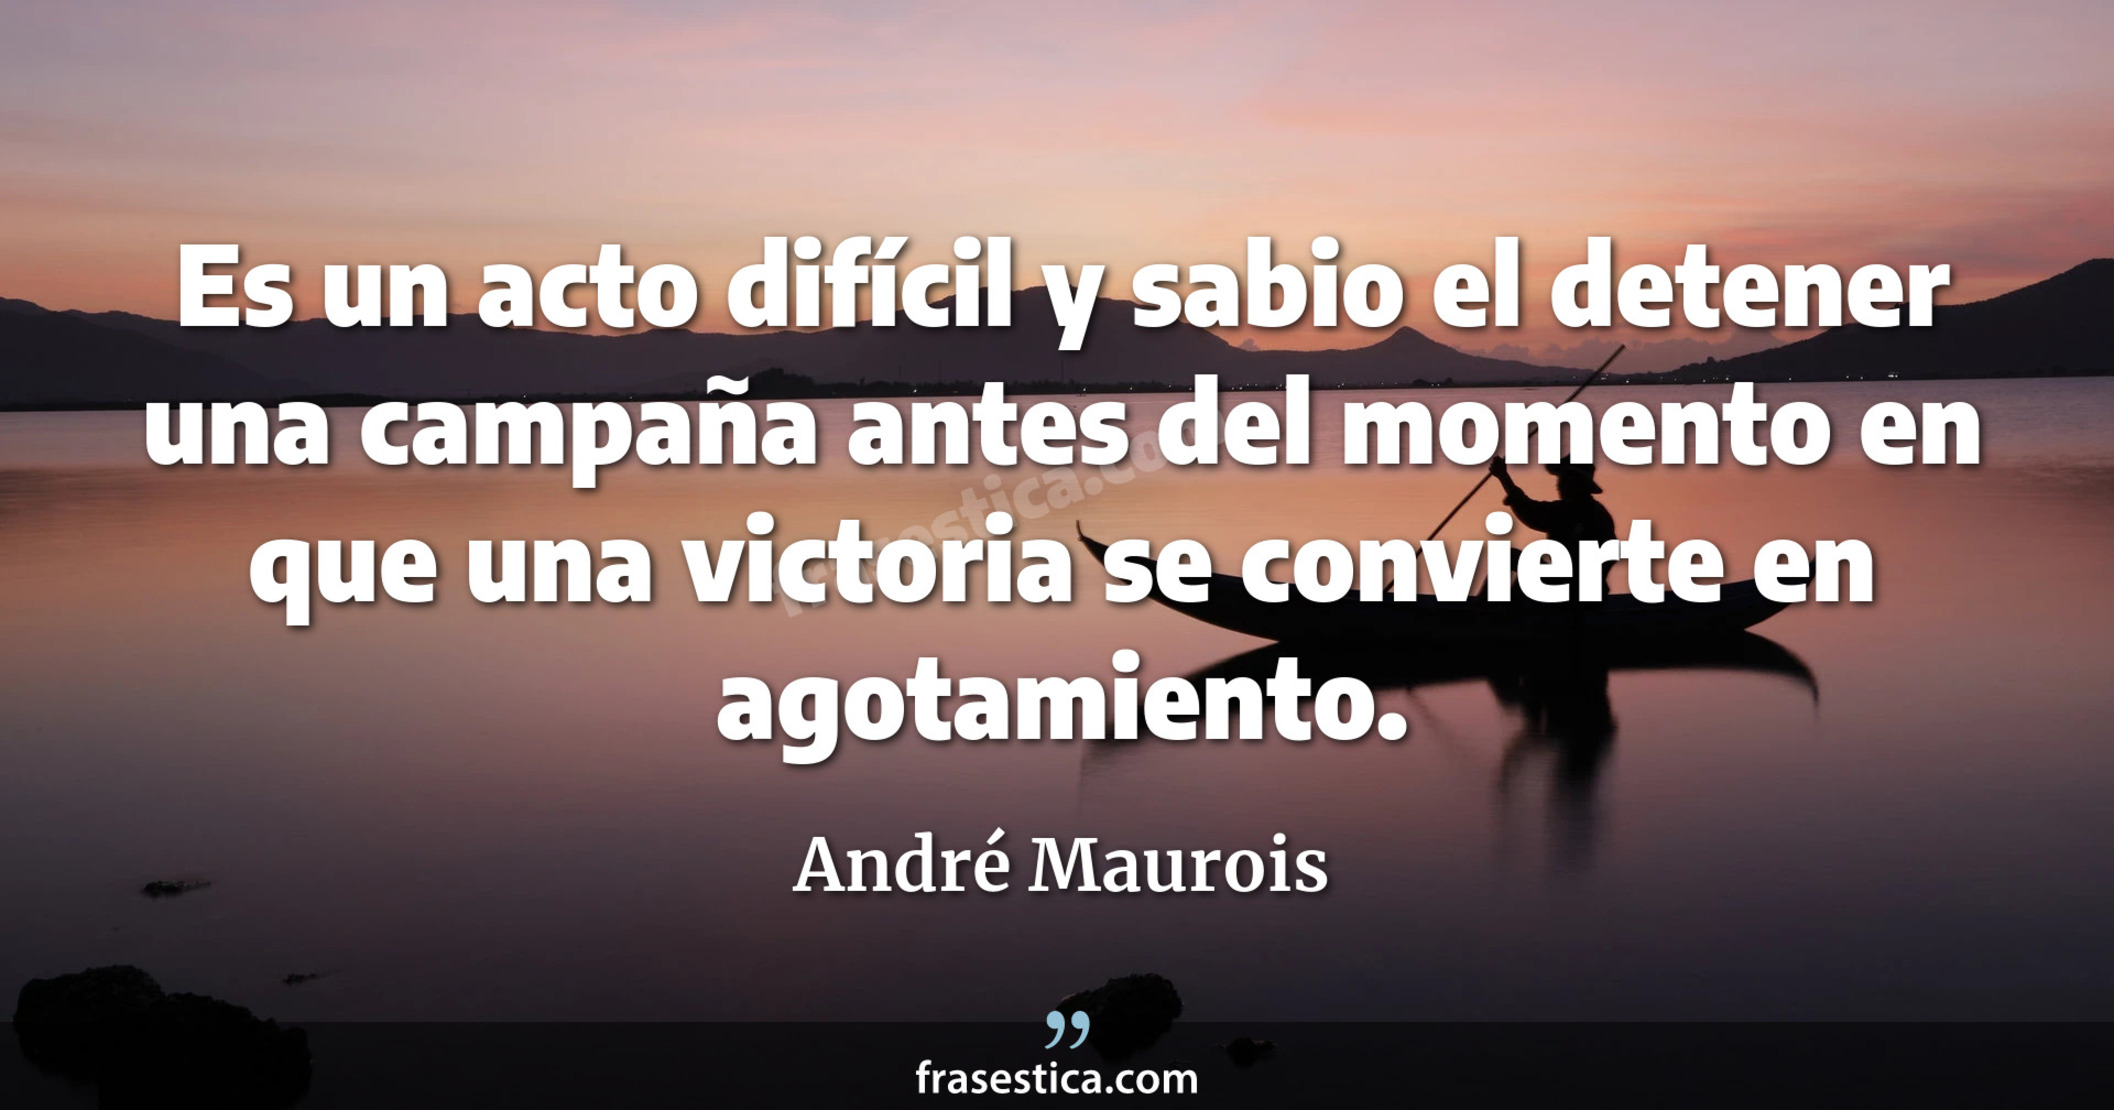 Es un acto difícil y sabio el detener una campaña antes del momento en que una victoria se convierte en agotamiento. - André Maurois